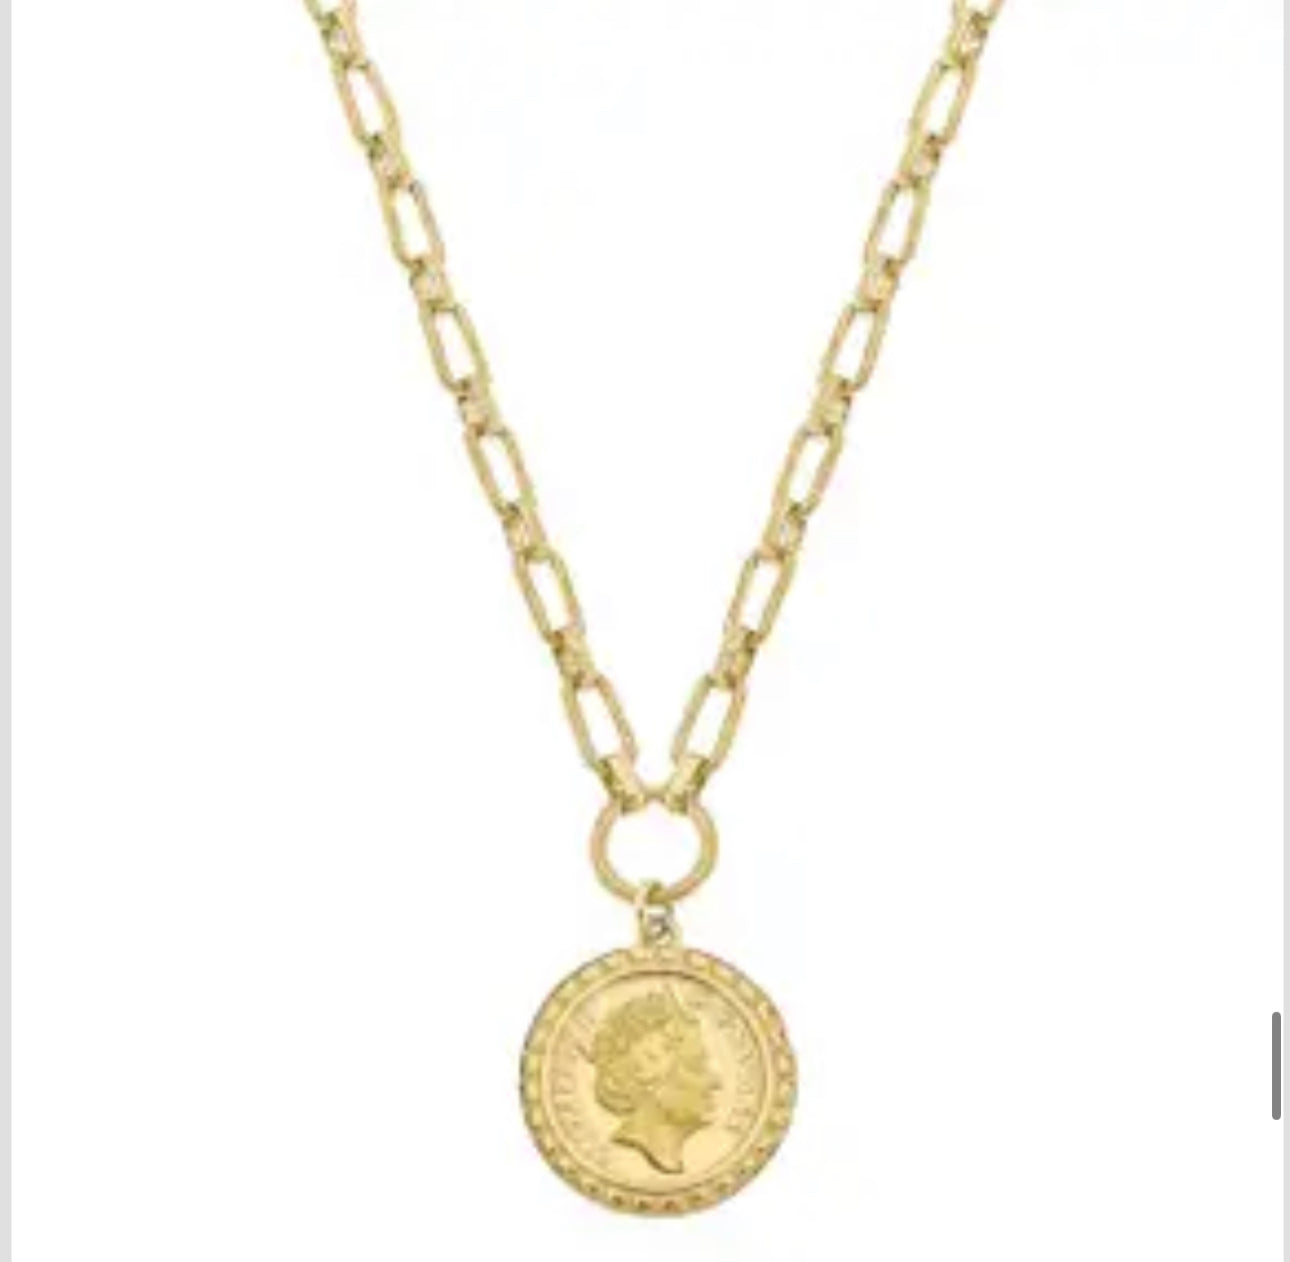 Queen coin necklace